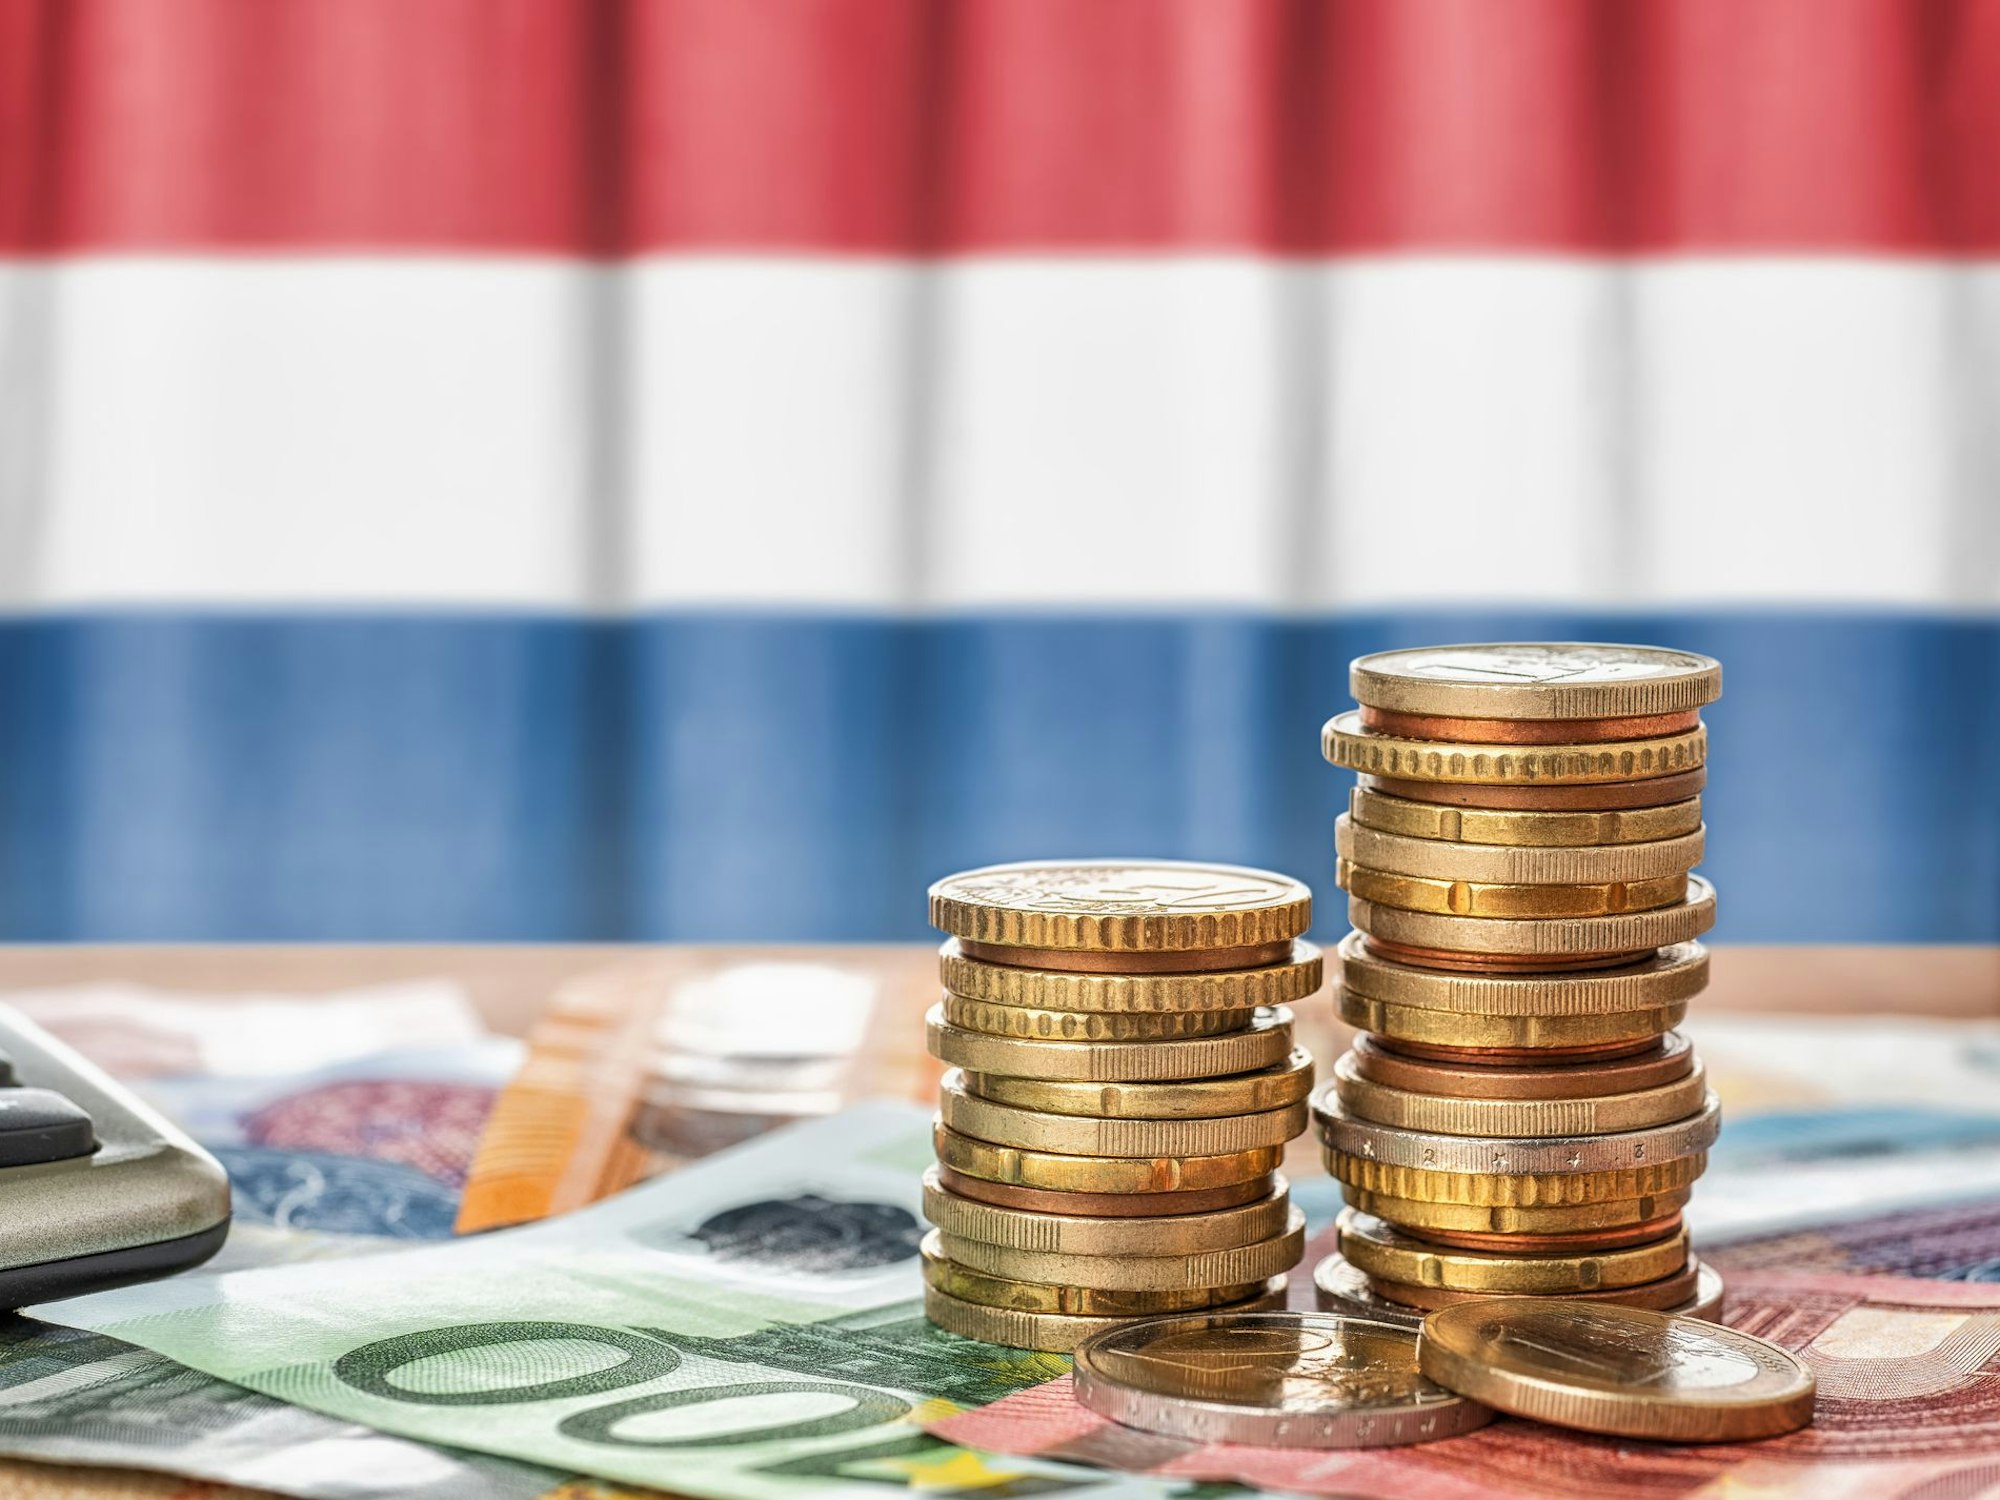 Euro Banknoten und Münzen liegen vor der niederländischen Flagge.